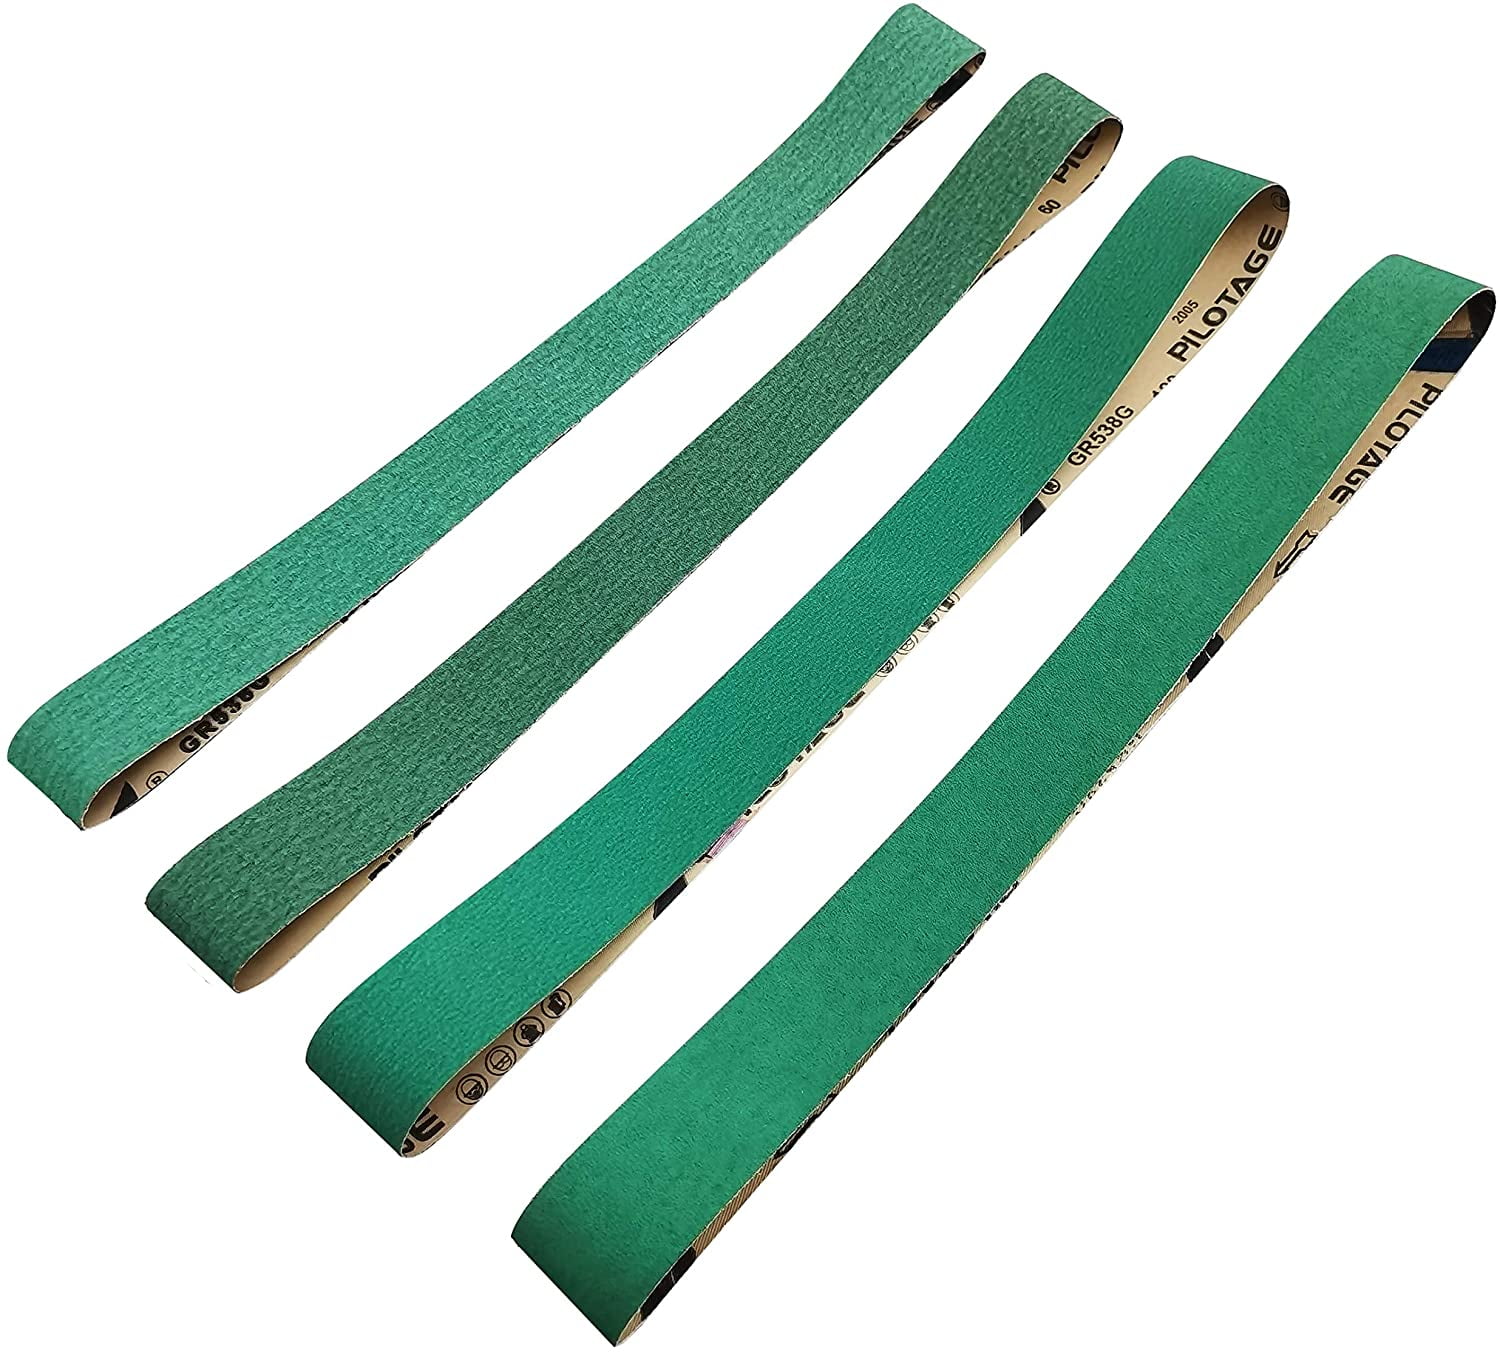 2 X 48 Inch 80 Grit Metal Grinding Zirconia Sanding Belts 6 Pack 